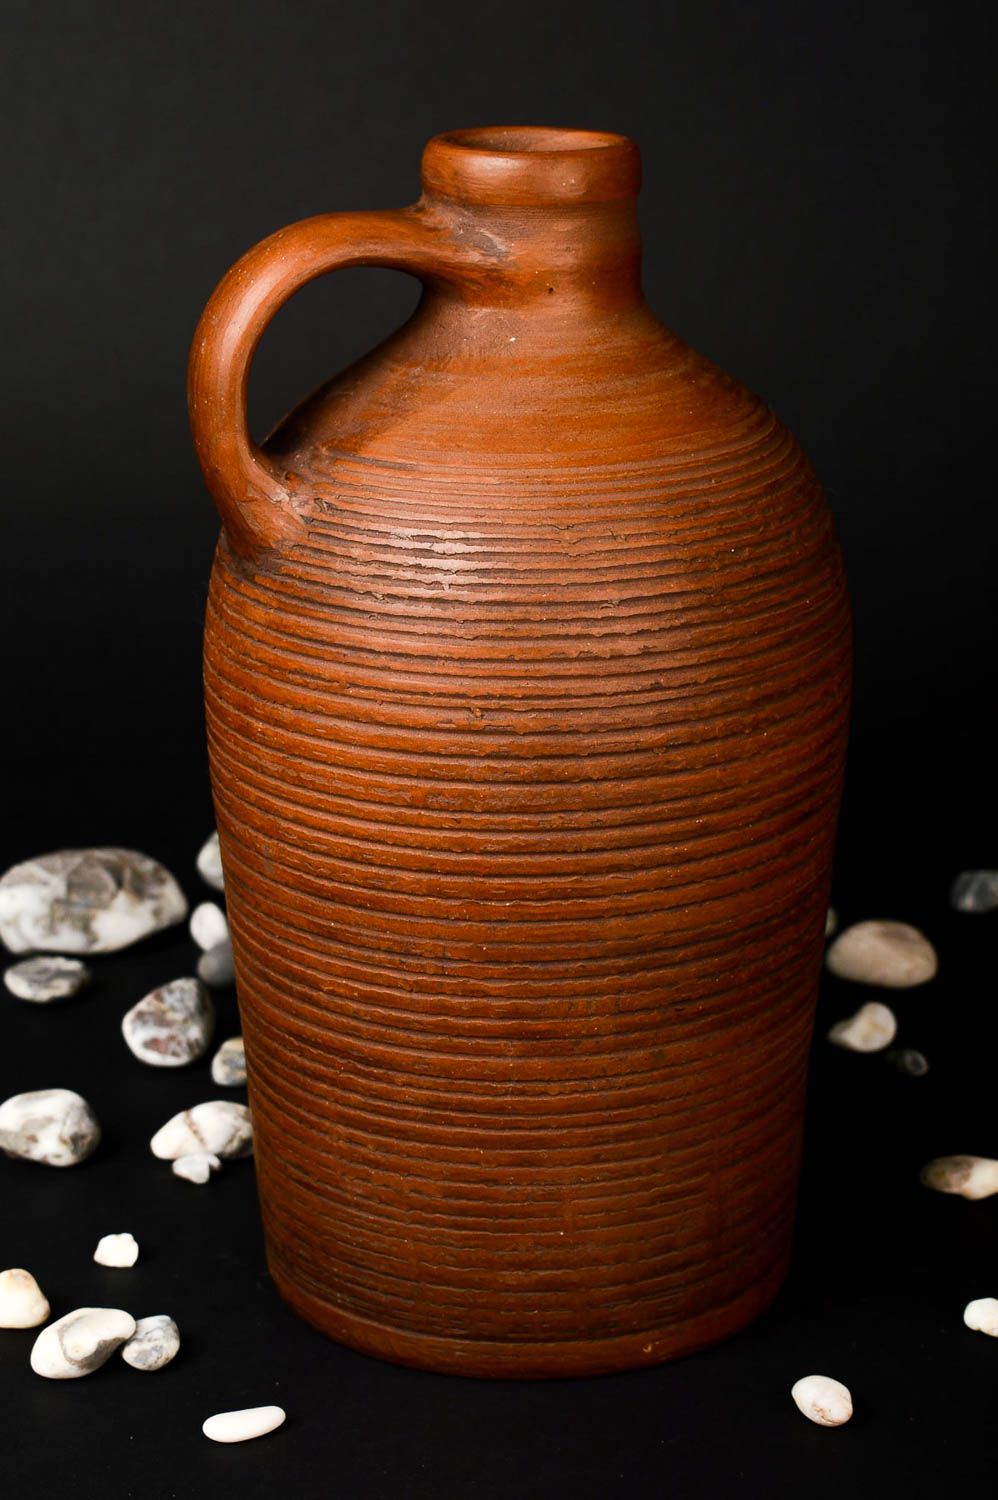 Handmade Flasche aus Ton Haus Deko Geschenk Flasche Keramik Geschirr schön foto 1